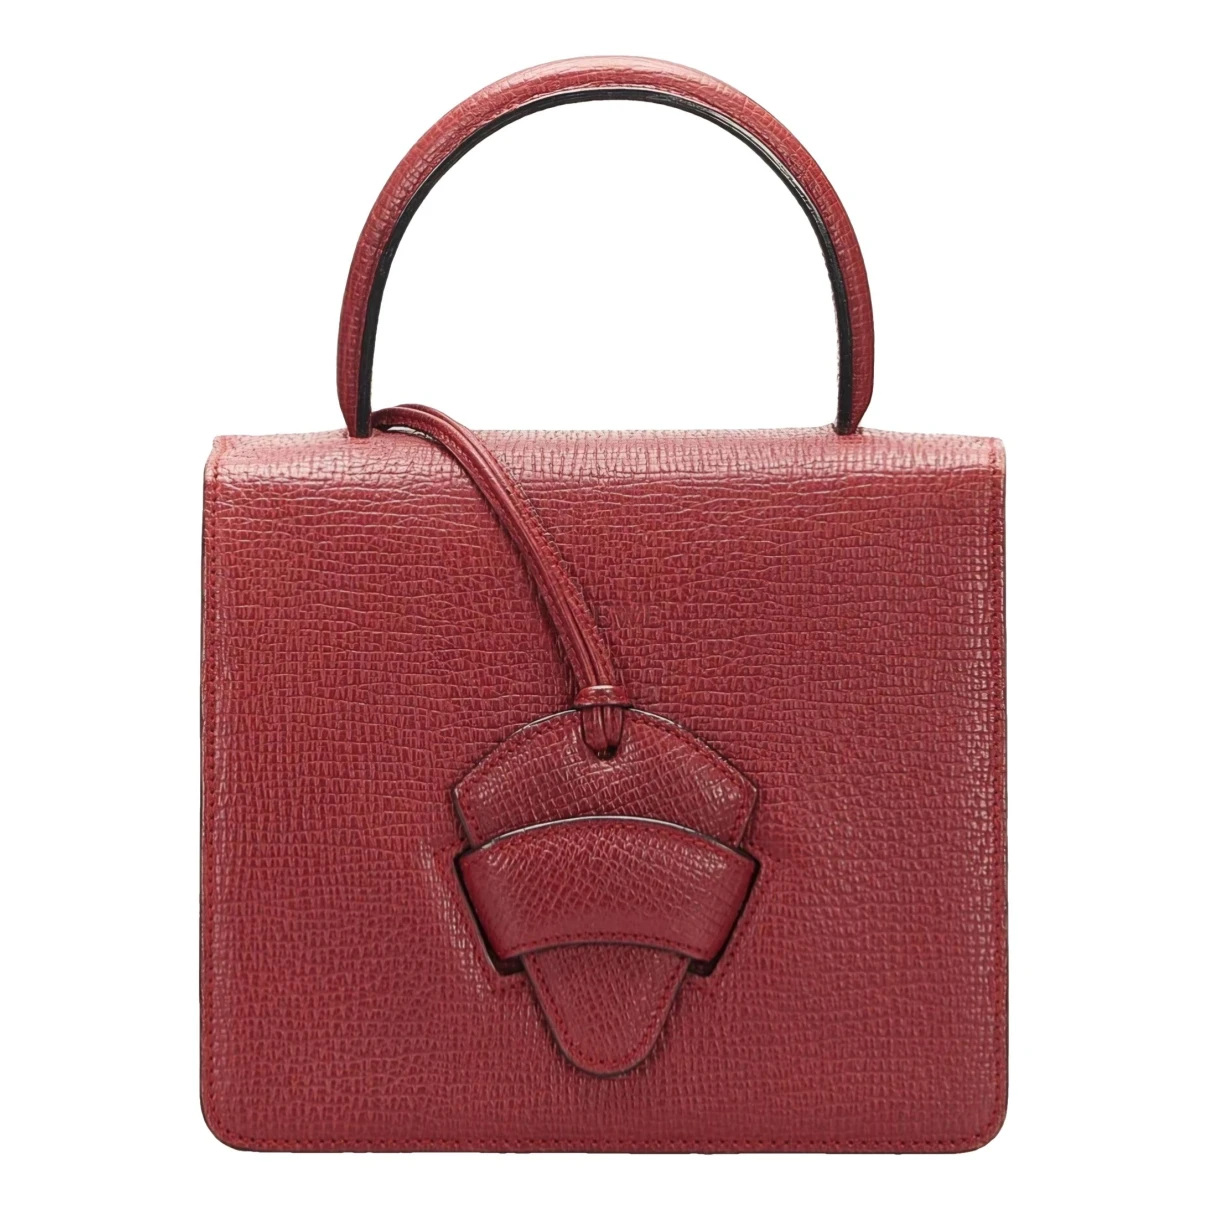 Pre-owned Loewe Barcelona Leather Handbag In Red